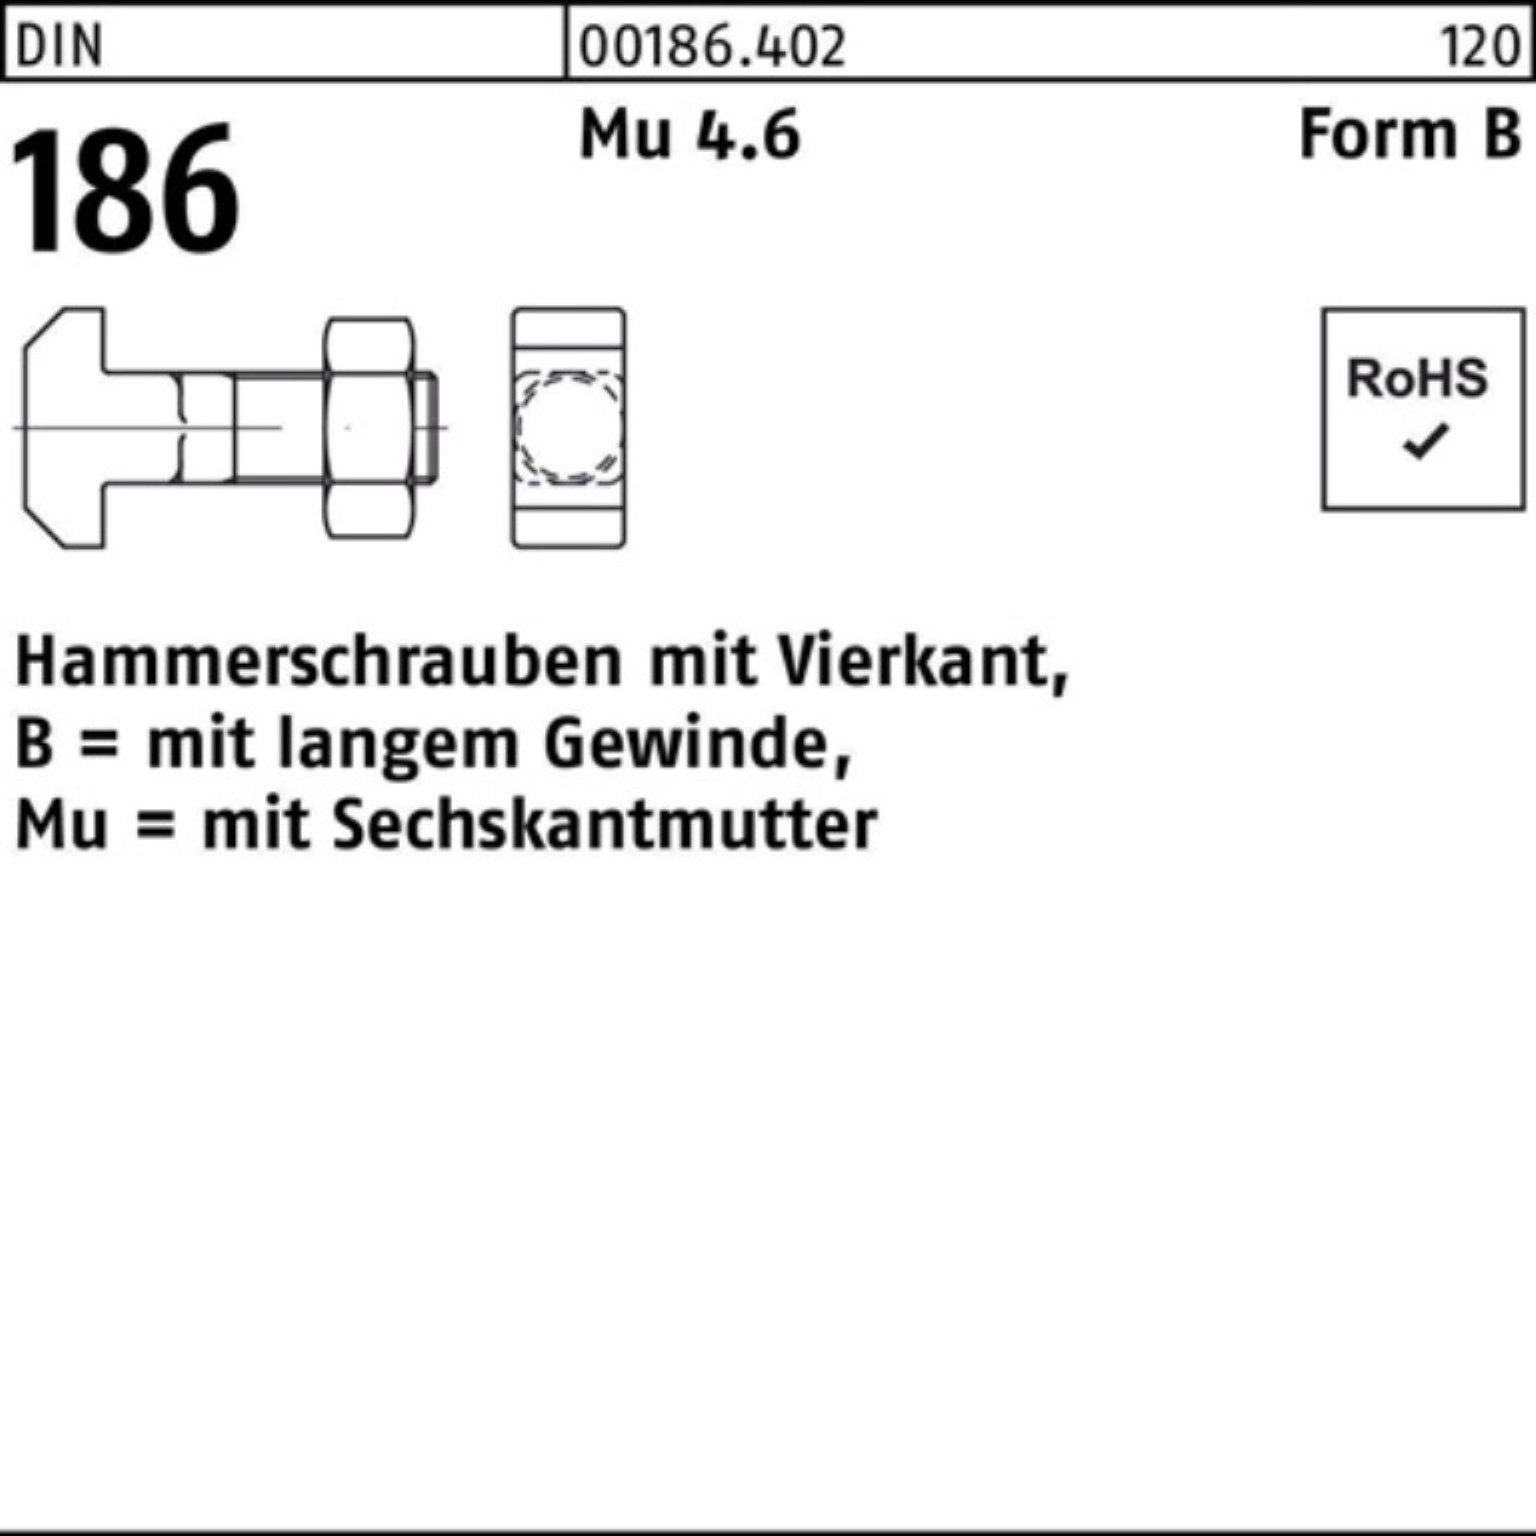 Reyher Schraube 100er Pack Hammerschraube DIN 186 FormB Vierkant 6-ktmutter BM 24x 90